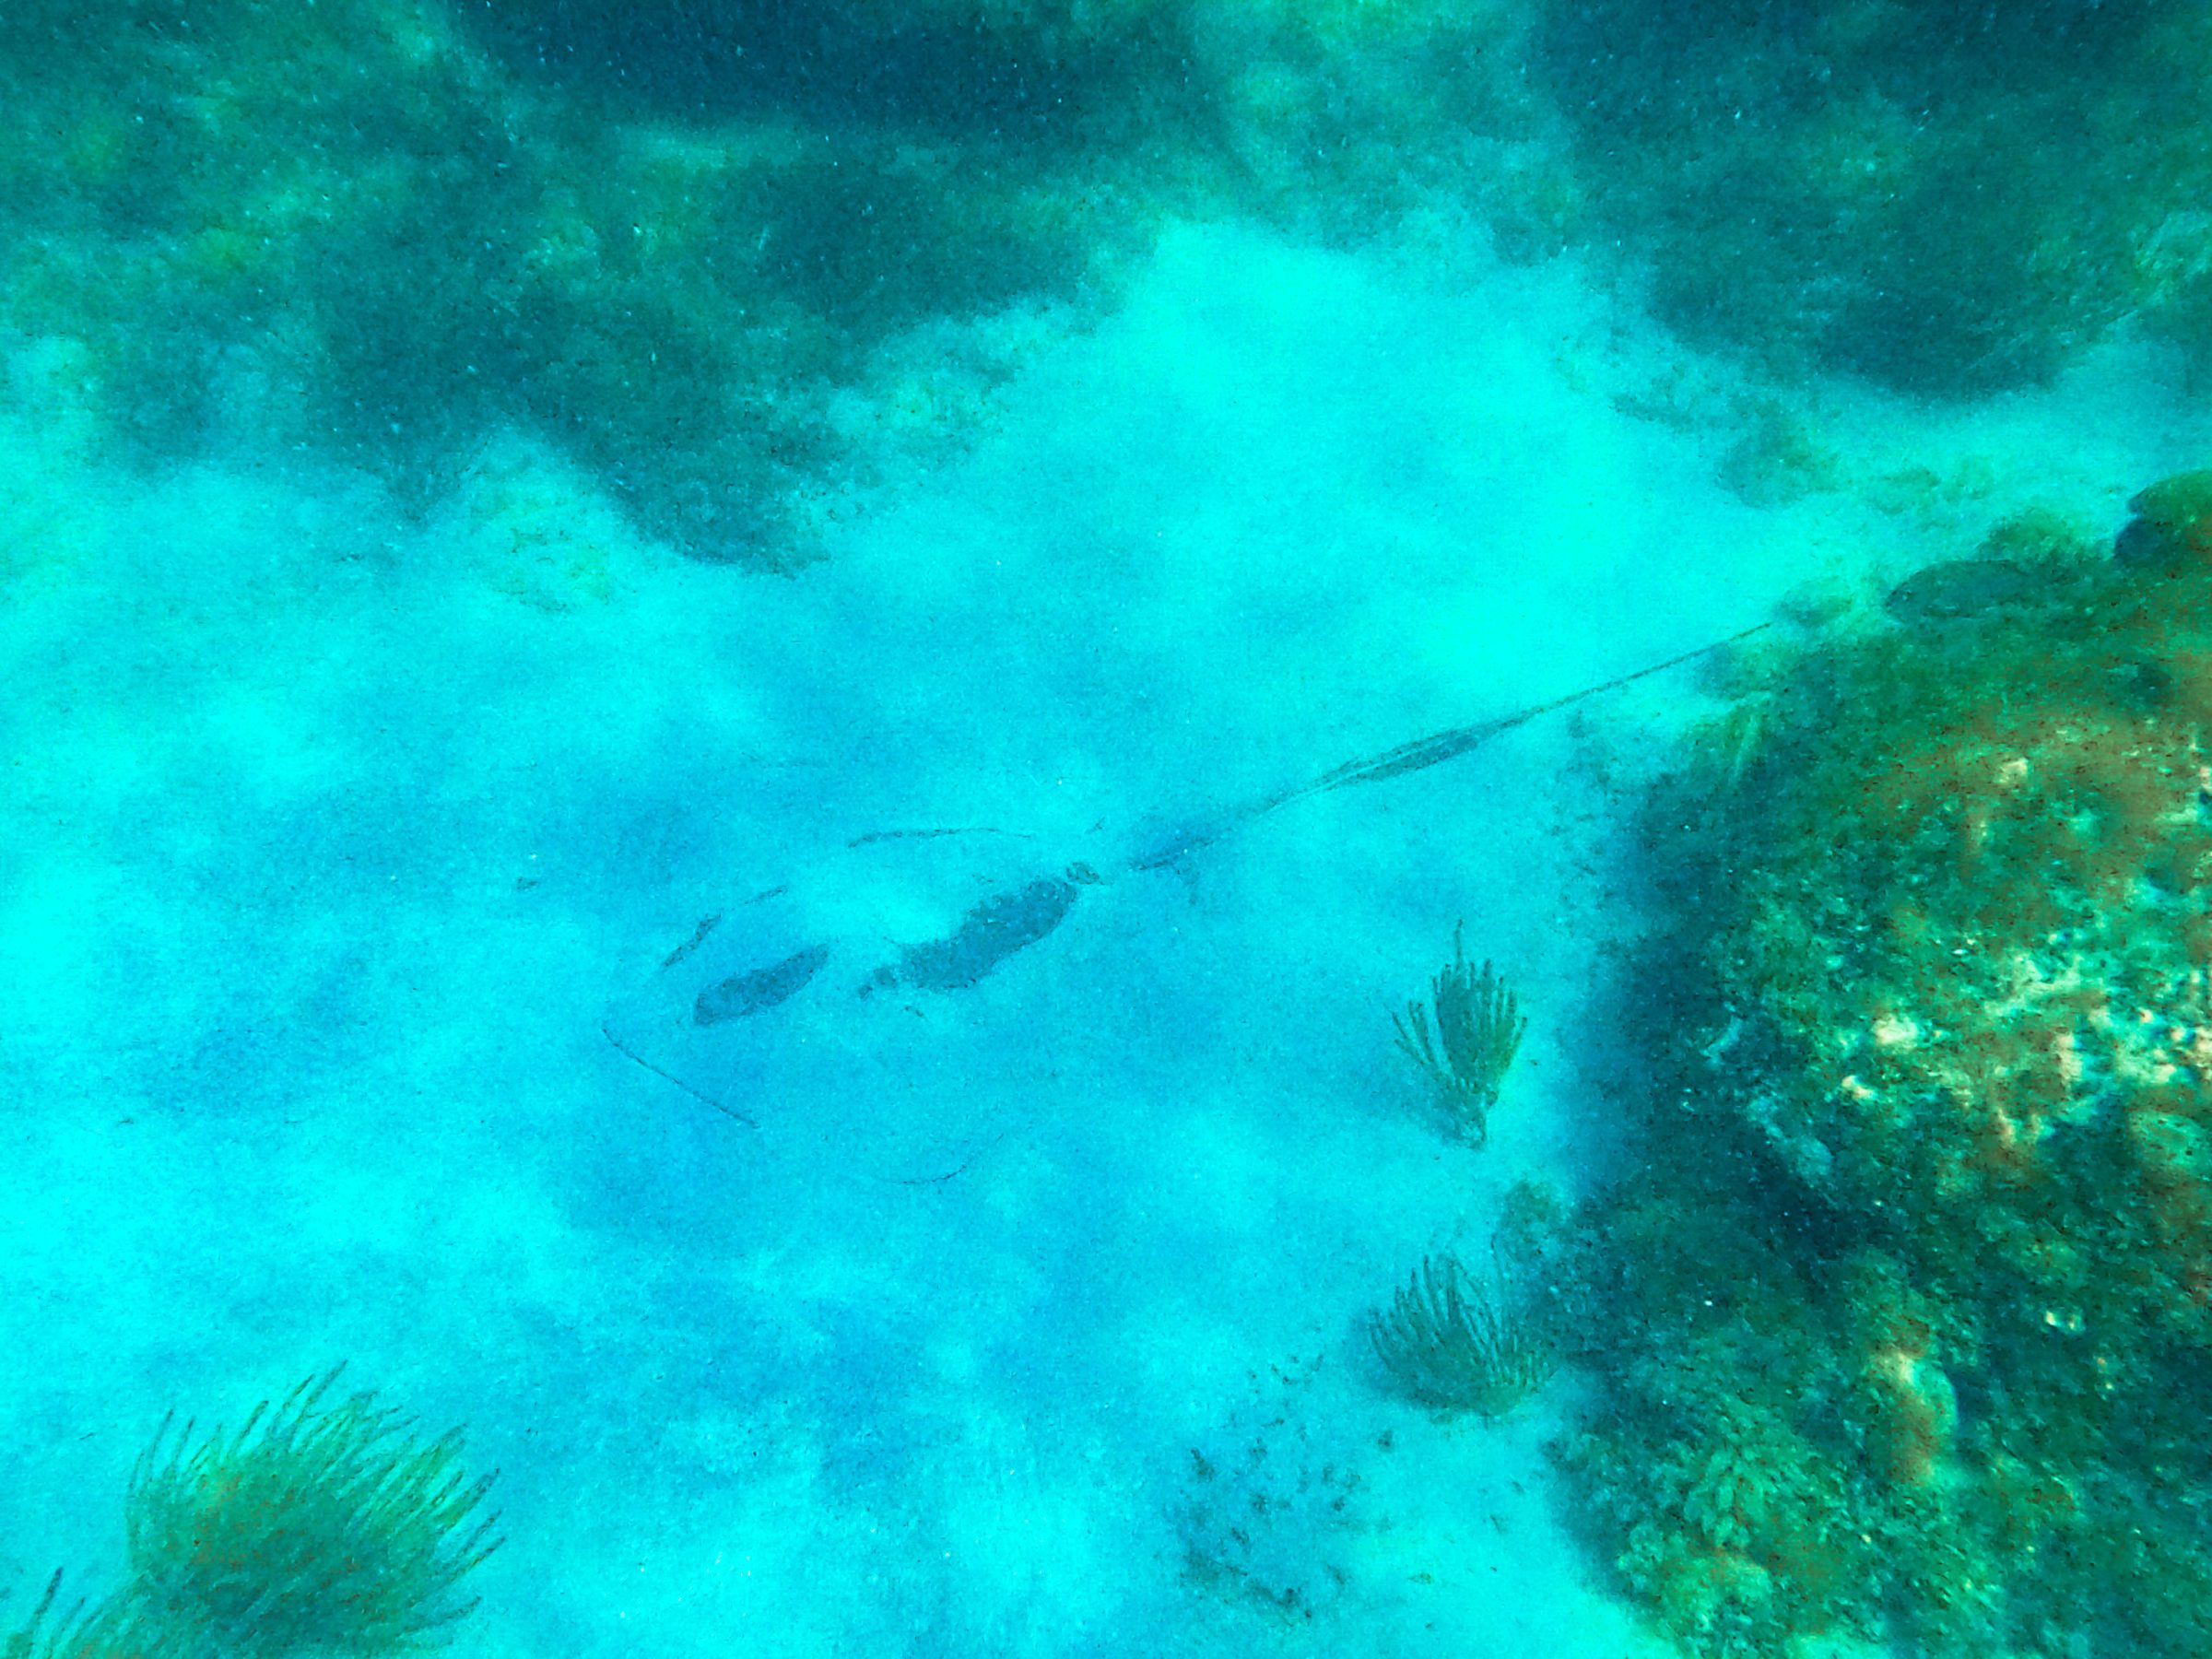 Eén van de vele pijlstaartroggen die we zagen tijdens het snorkelen. Ze verstoppen zich vaak in he zand | Key West